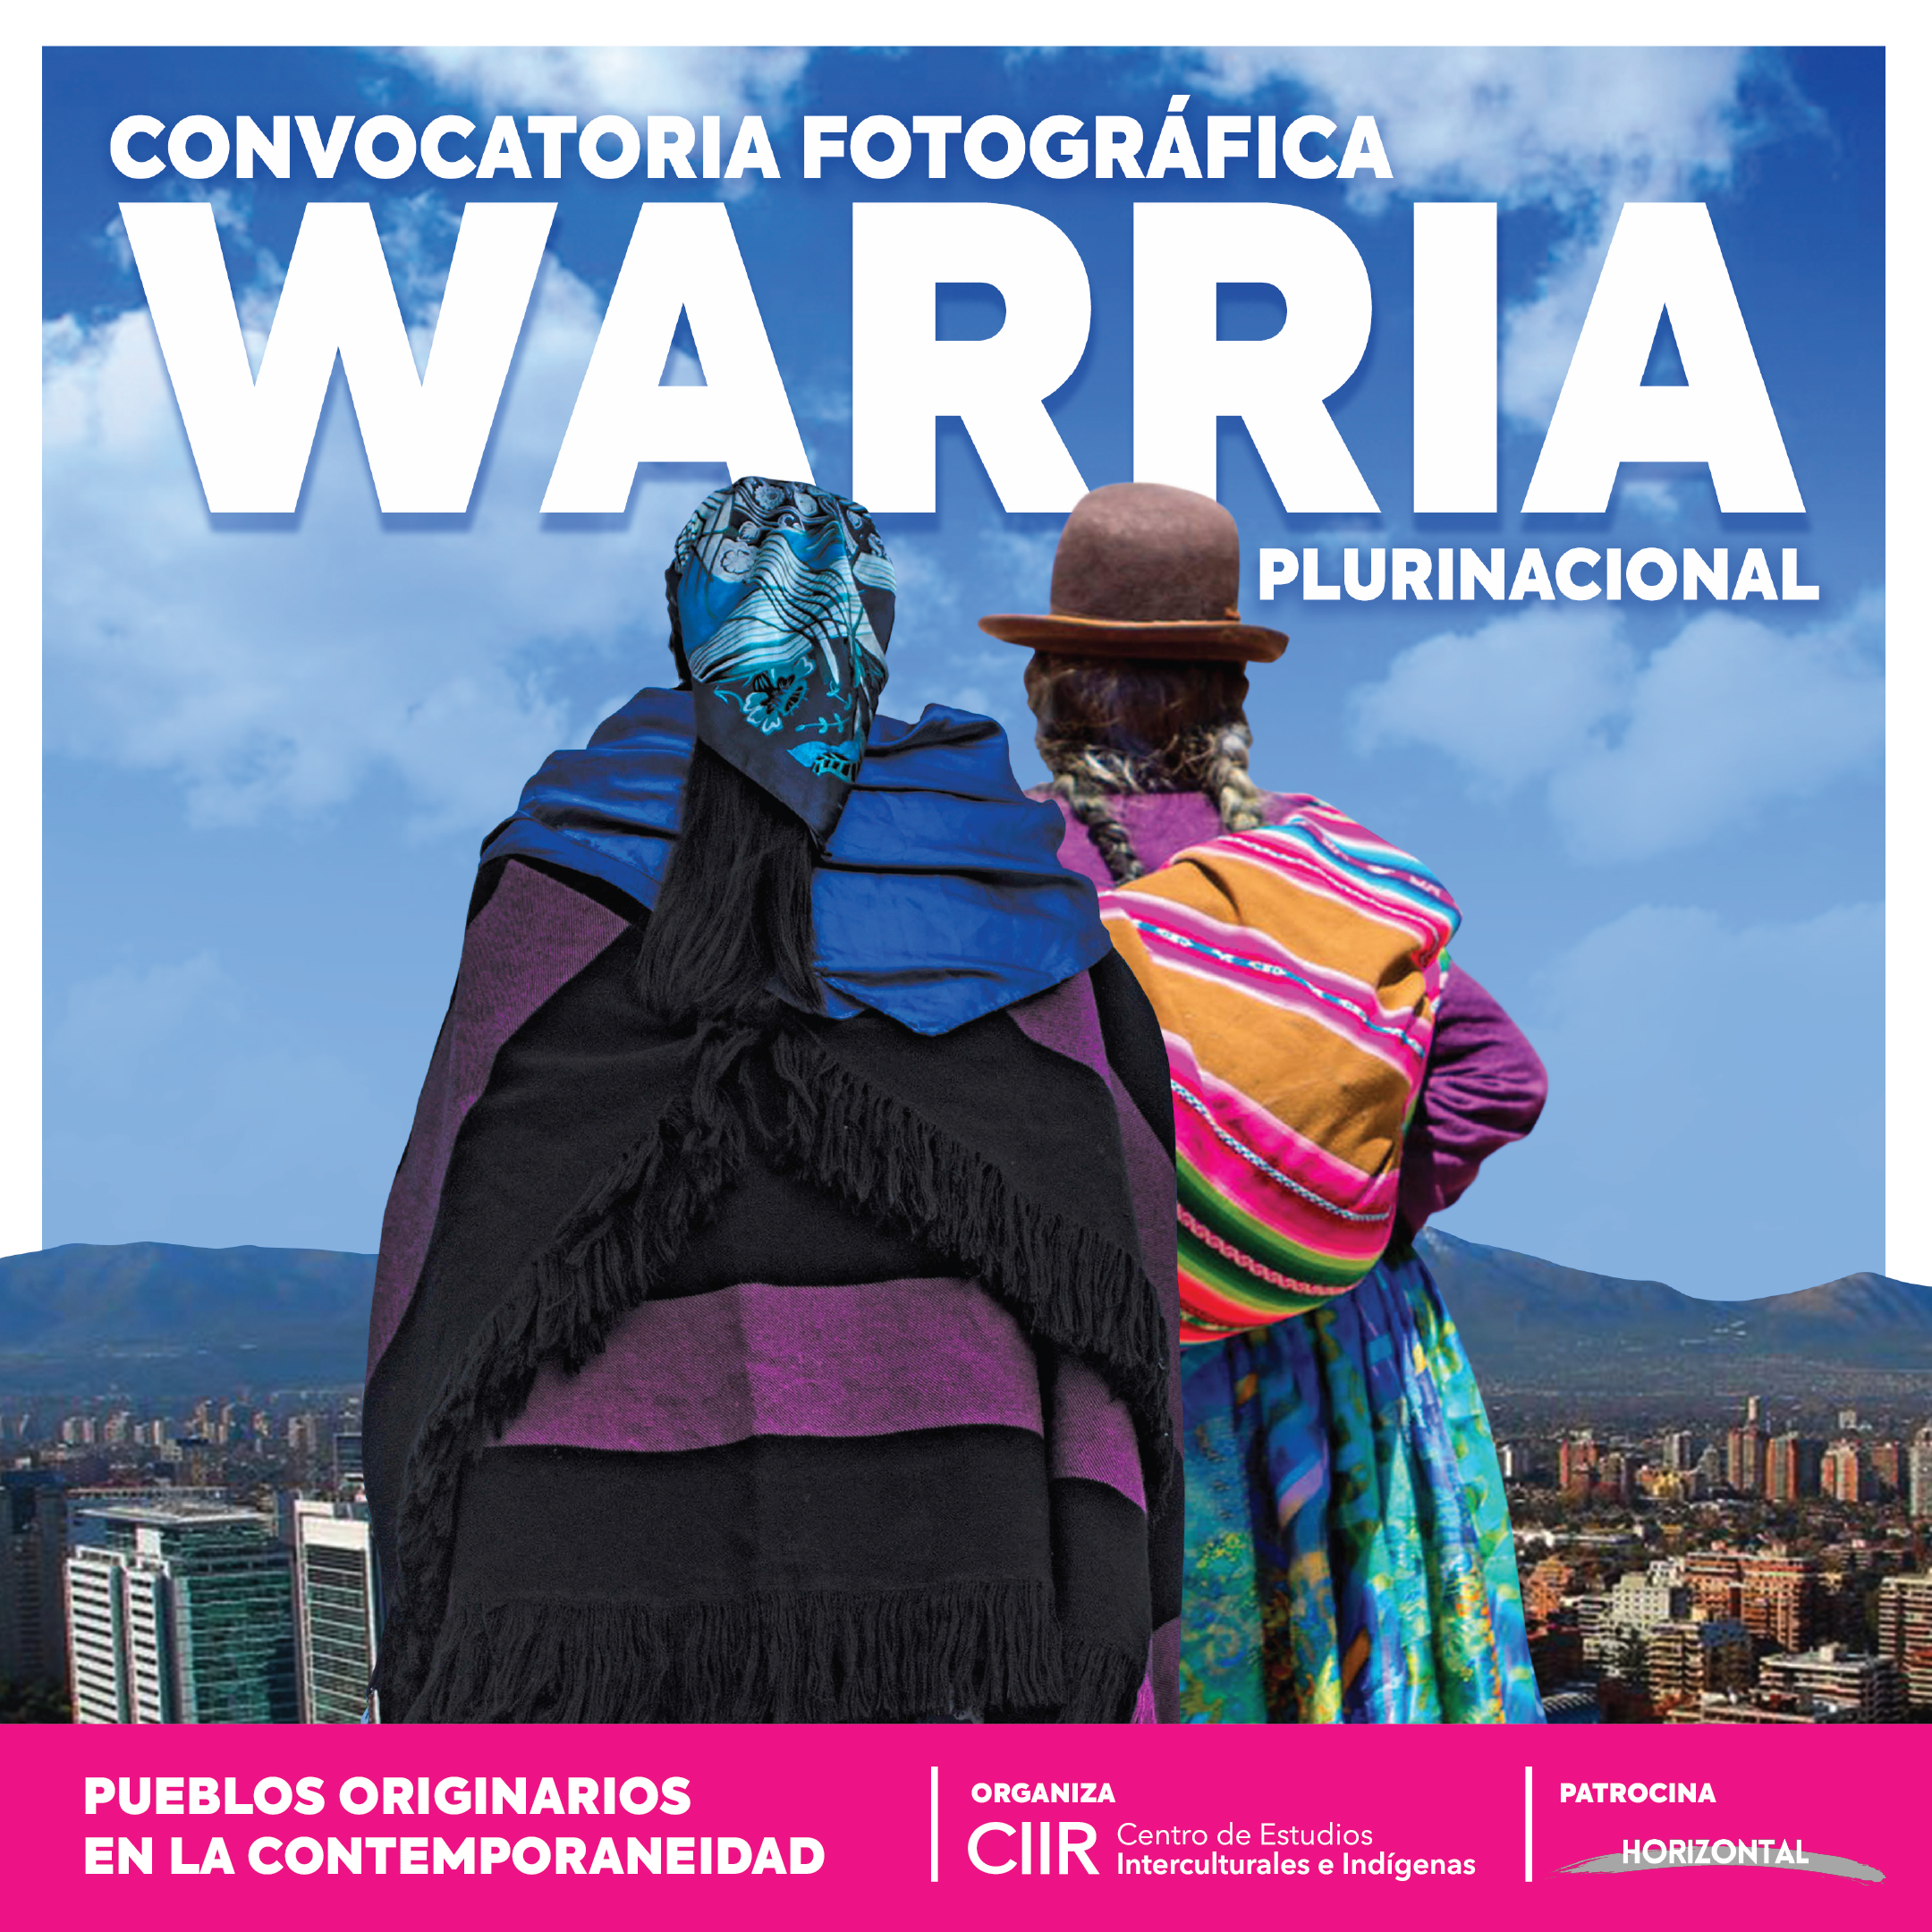 Convocatoria fotográfica “Warria Plurinacional: Pueblos Originarios y su presencia en la contemporaneidad"